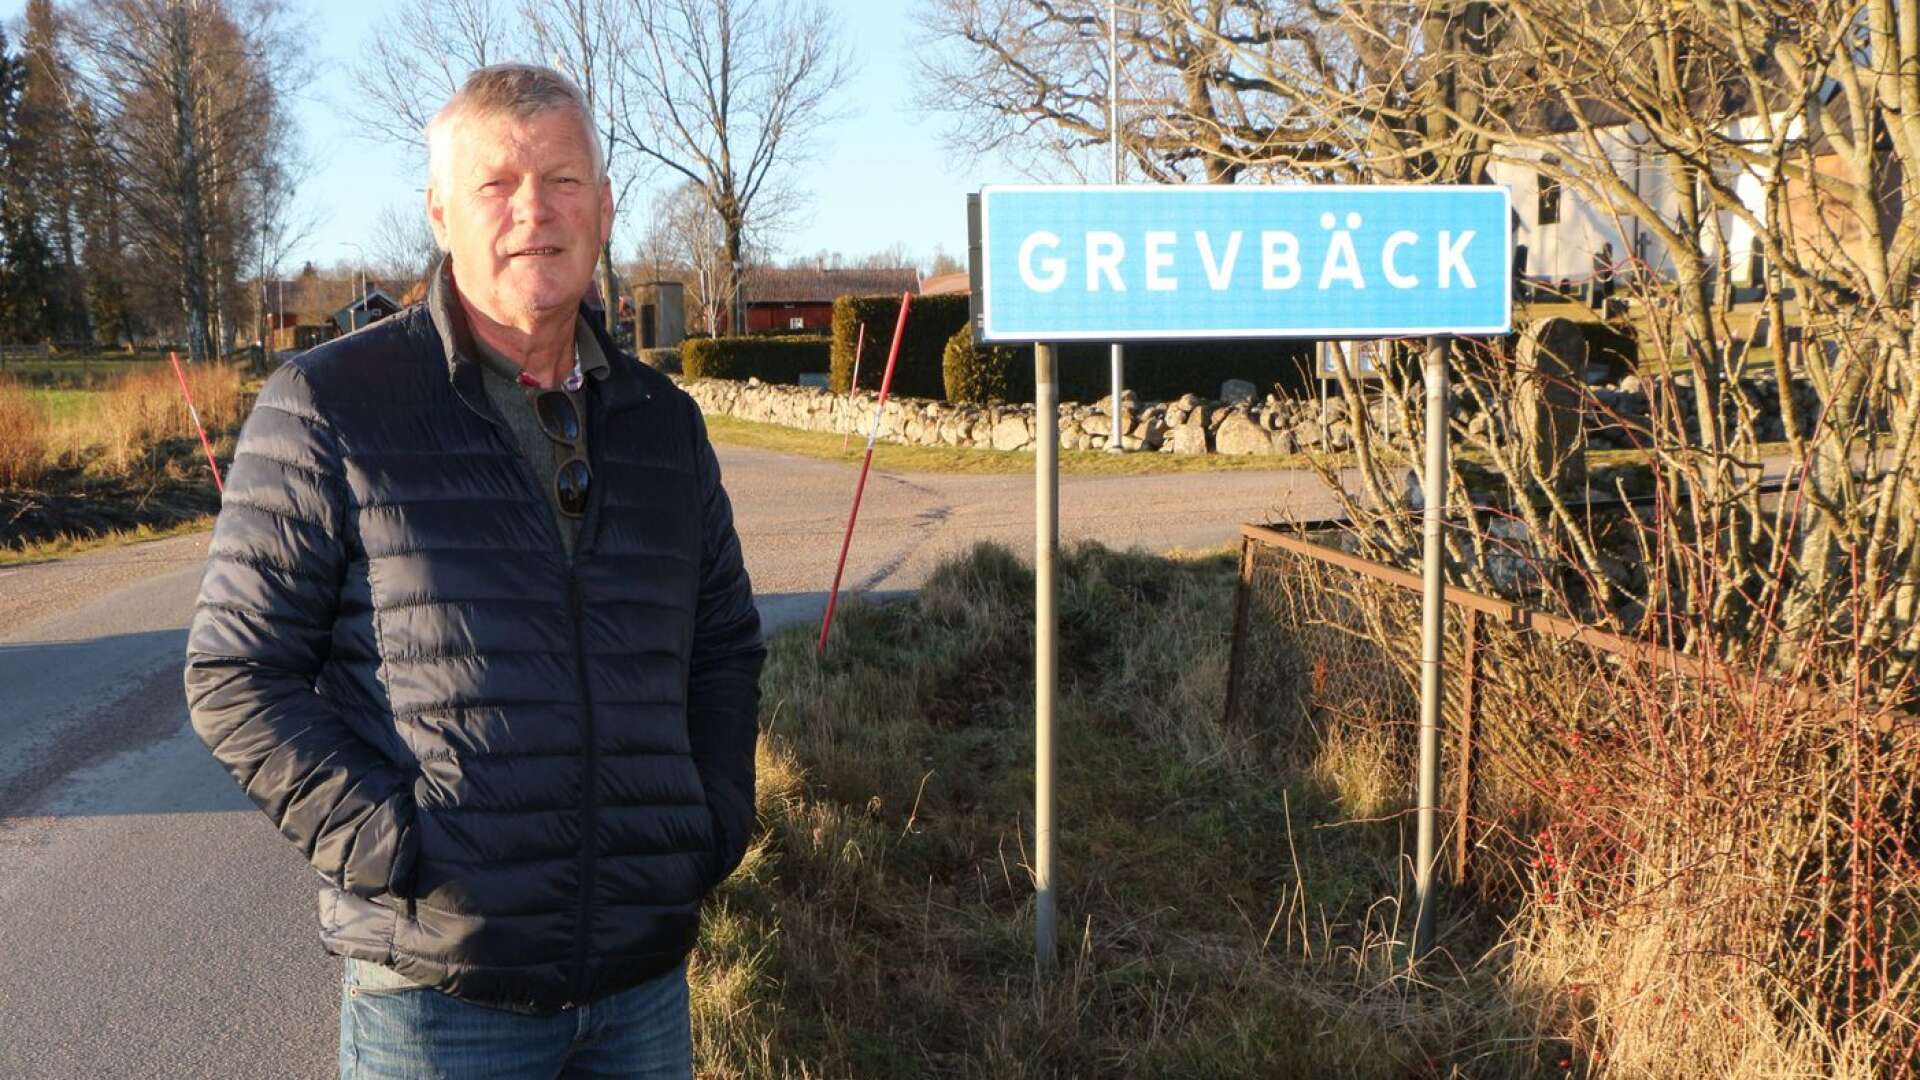 Boende i Grevbäck vill ha kommunalt vatten och Tomas Uvesten har skrivit till kommunen om önskemålet.